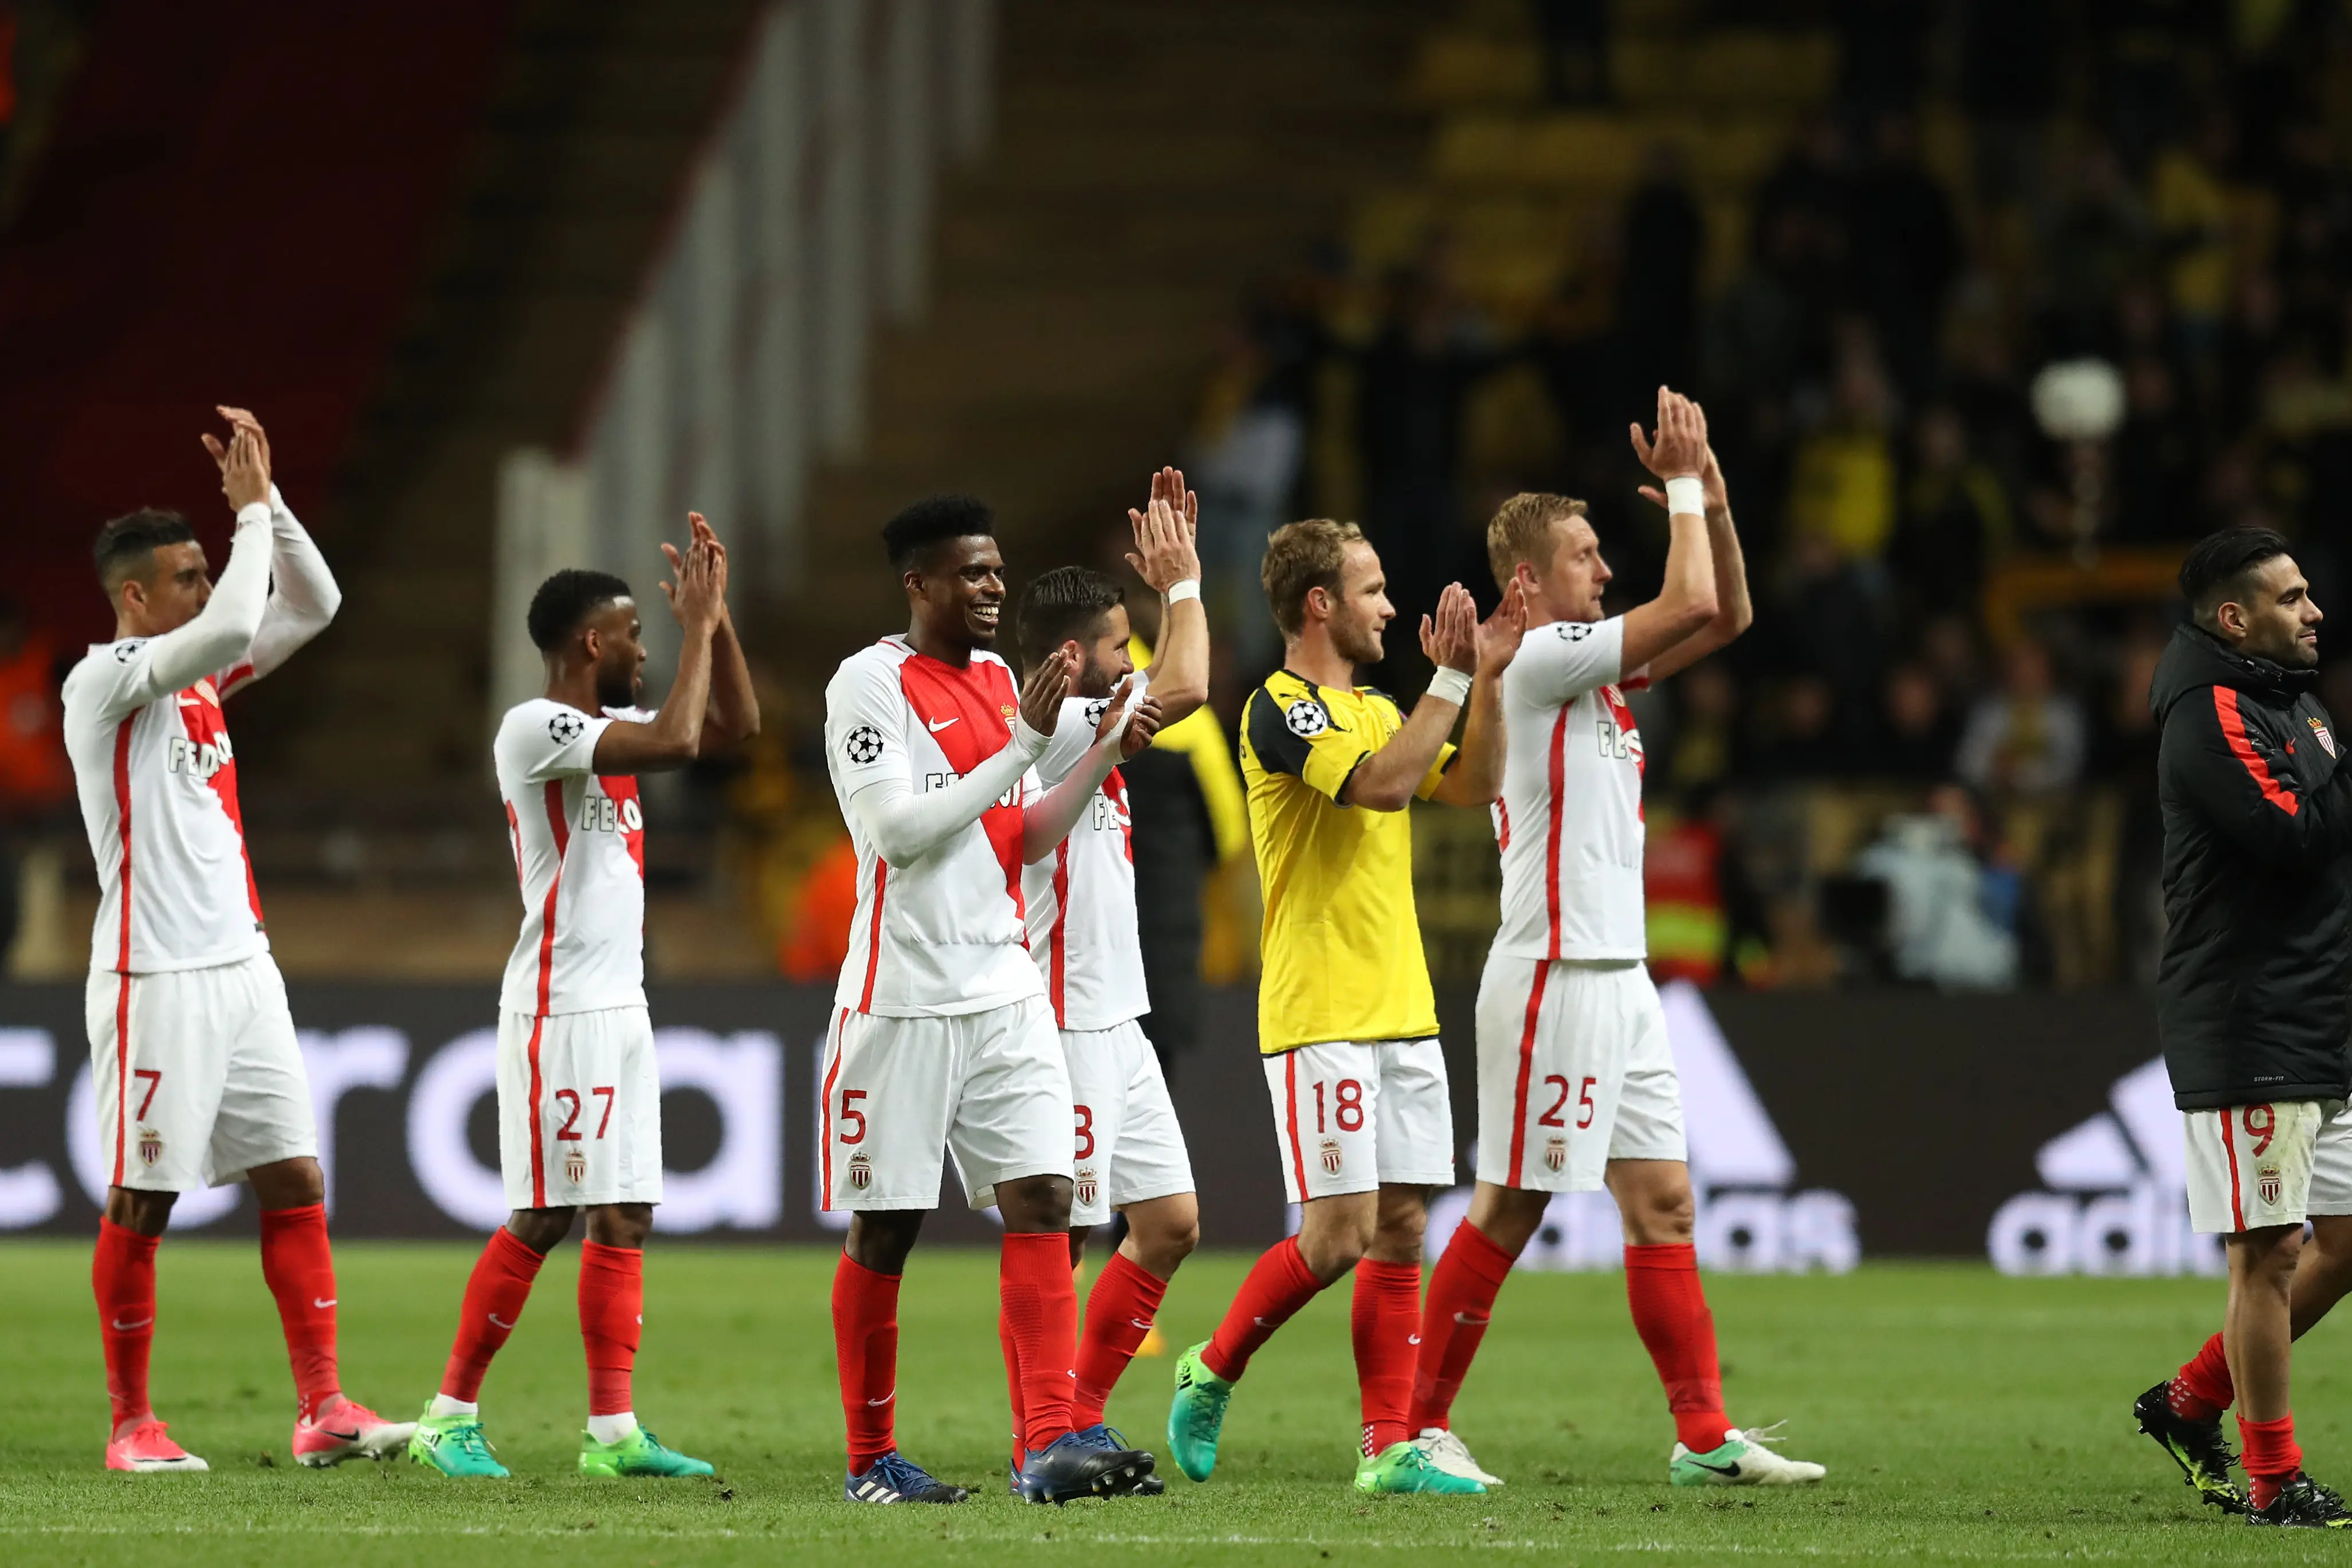 Kebahagiaan para pemain AS Monaco usai memastikan diri ke semifinal Liga Champions 2016/2017. (Valery HACHE / AFP)